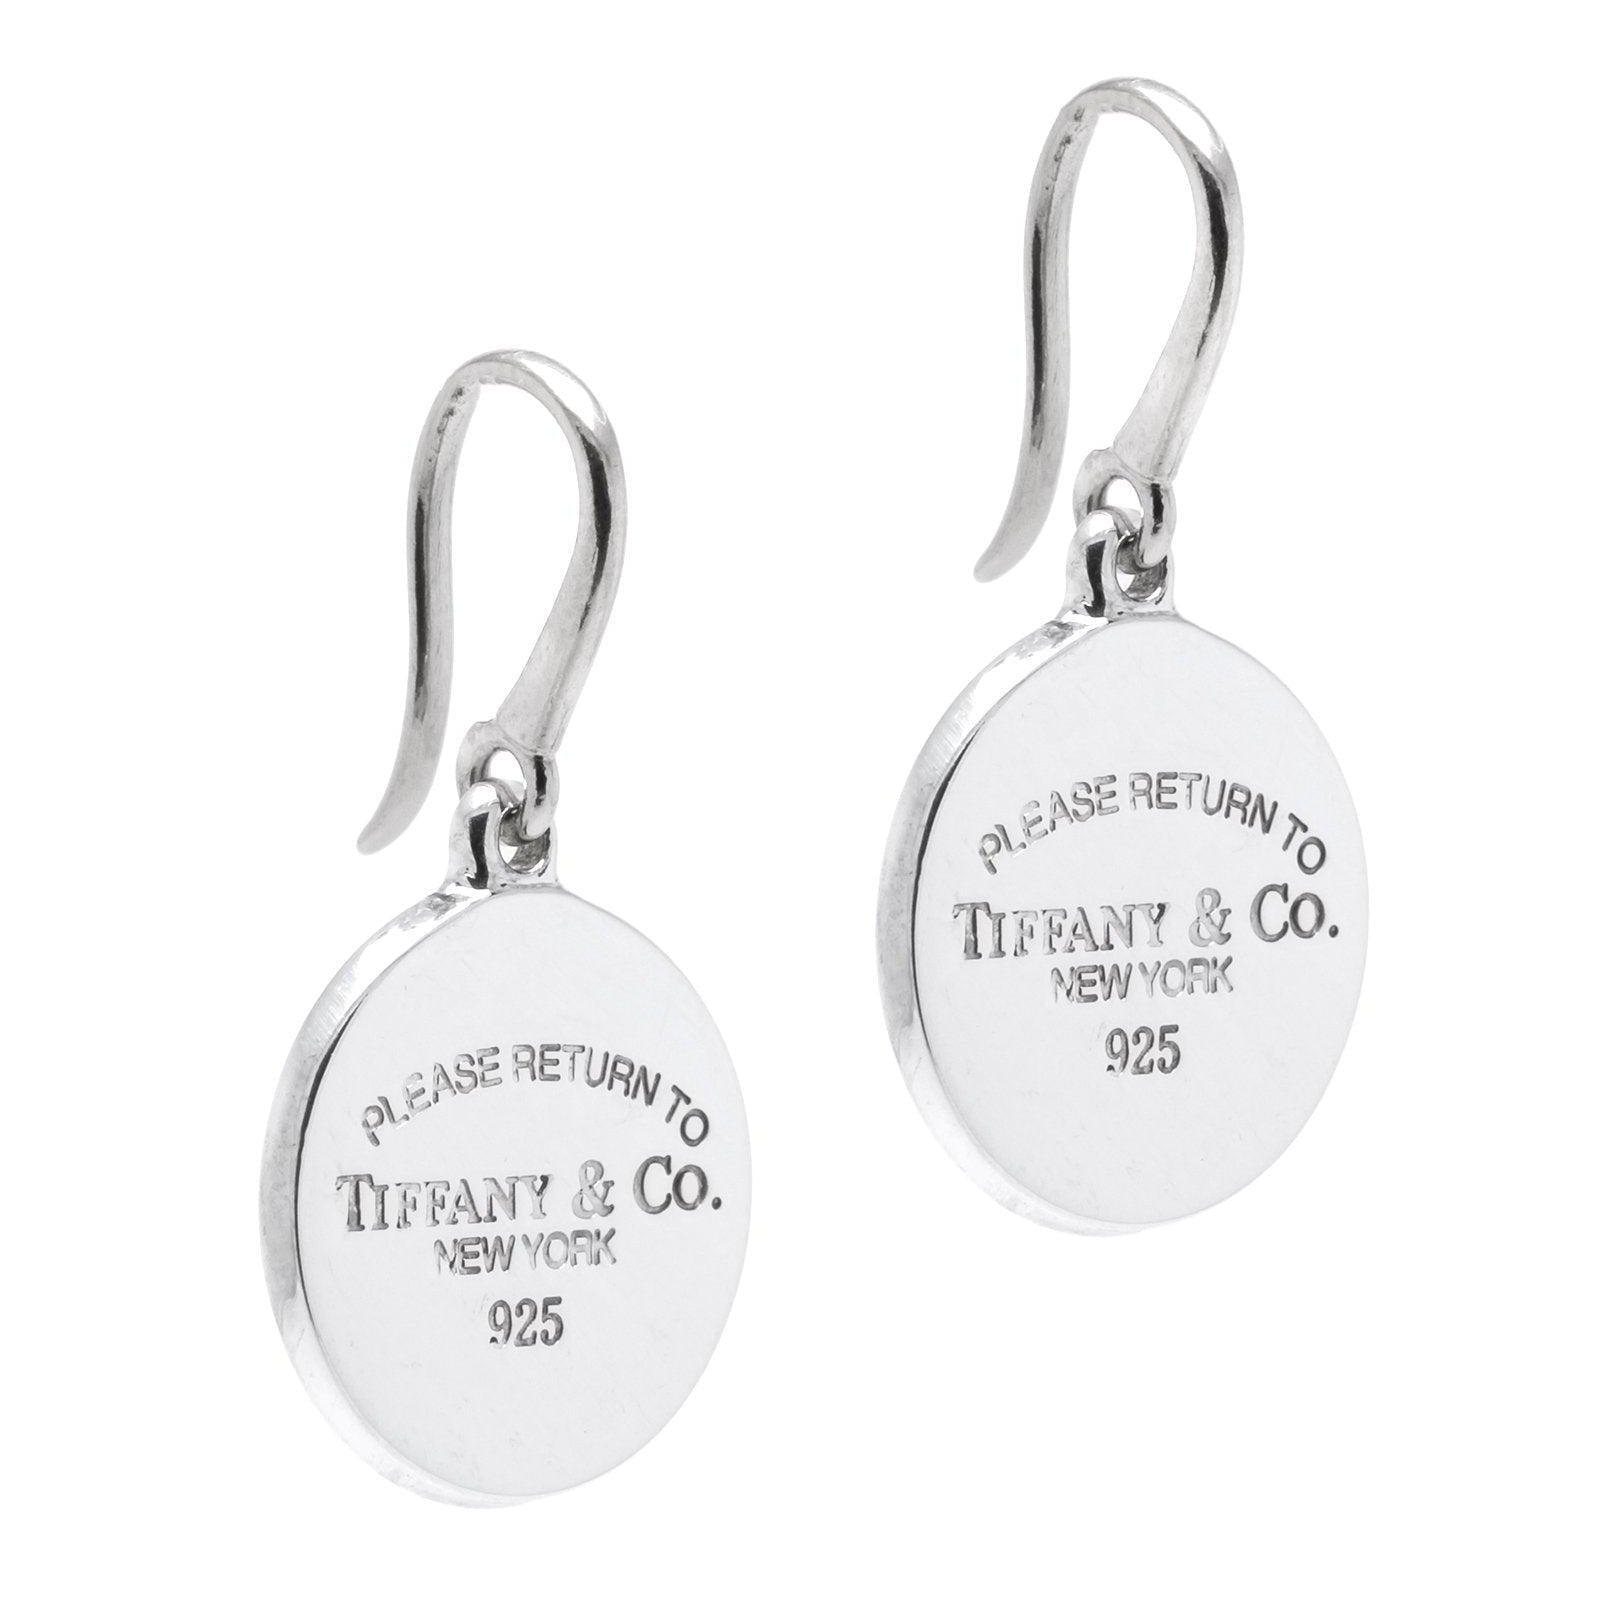 Tiffany & Co. Return To Tiffany Heart Earrings in Sterling Silver | myGemma  | Item #115197